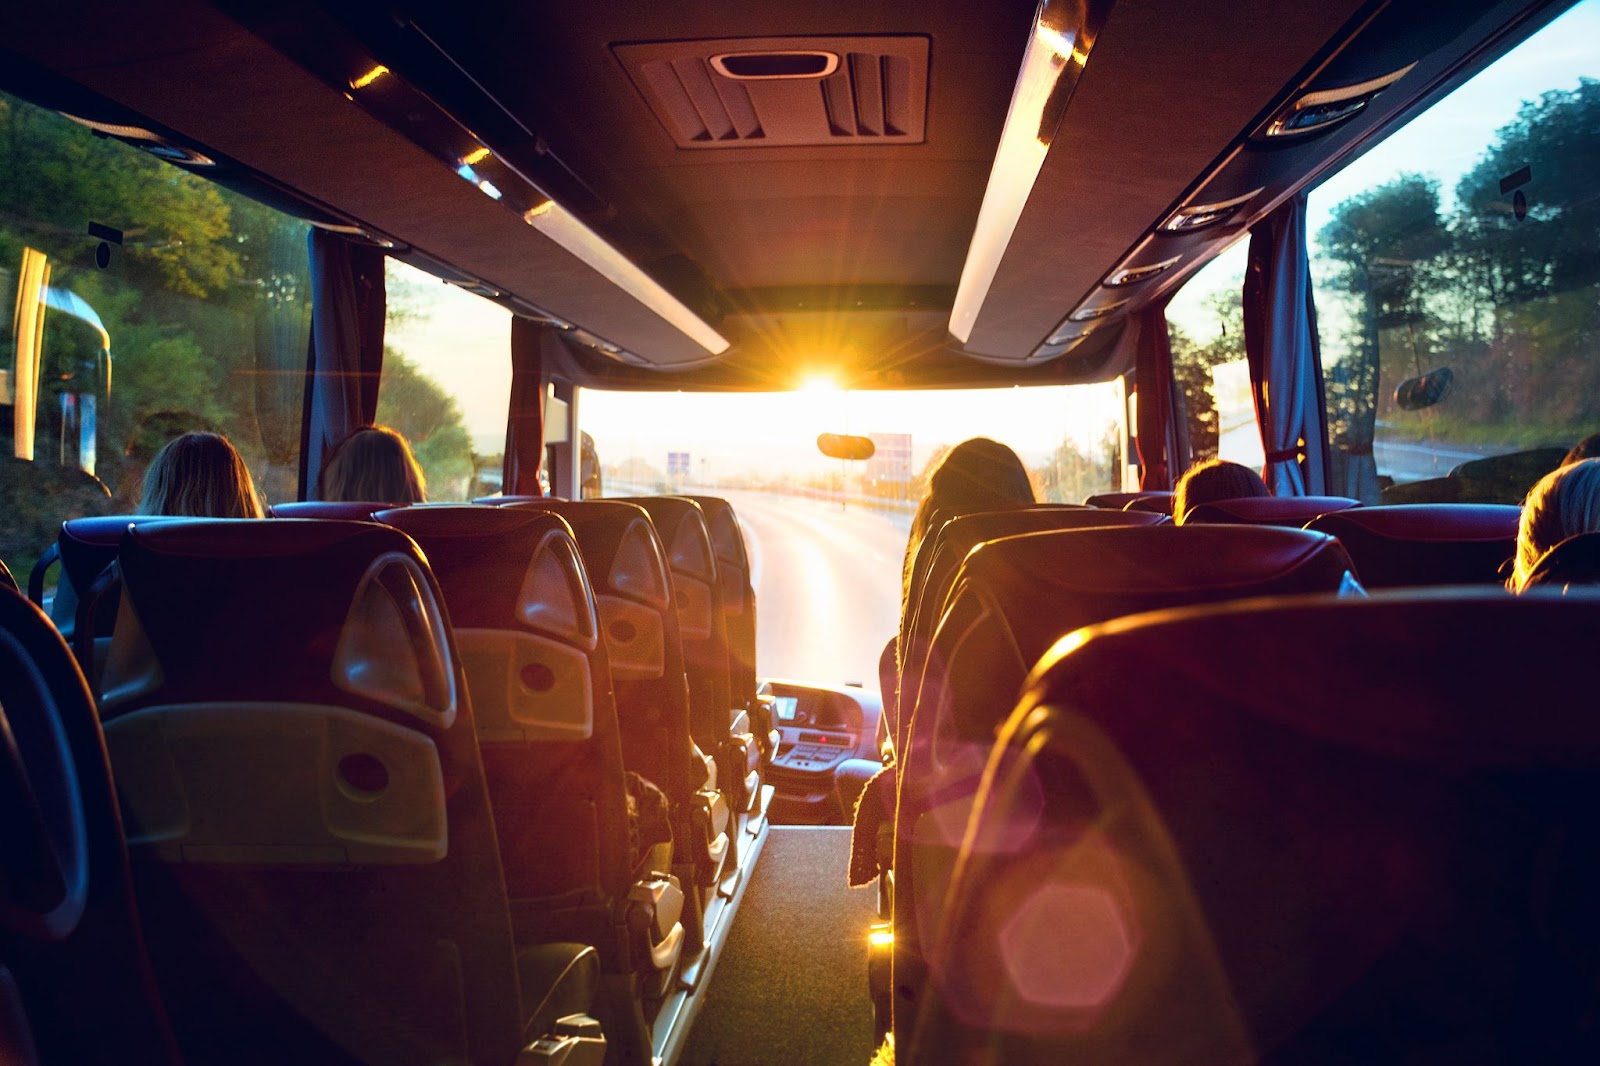 Foto de dentro de um ônibus de turismo, mostrando a estrada a frente com o sol começando a se pôr no horizonte.